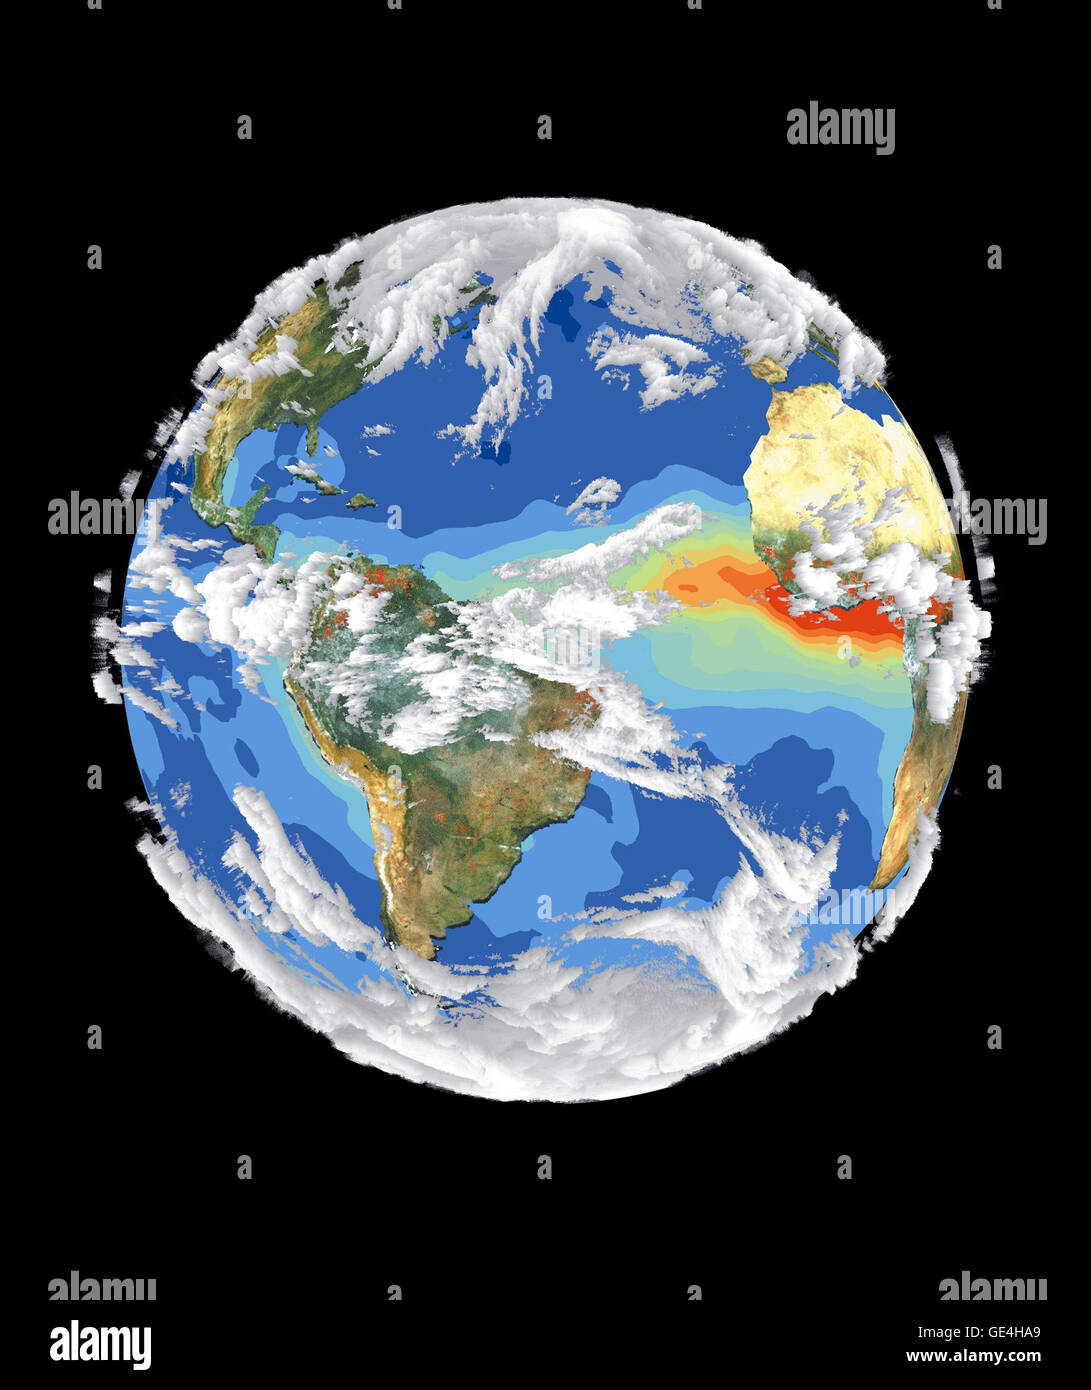 Satelliten-Daten und Bilder wie die in diesem Bild der Erde vorgestellt haben Wissenschaftler ein umfassenderes Bild von der Erde miteinander verbundenen Systemen und Klima. Vier verschiedene Satelliten dazu beigetragen, die Entstehung dieses Bildes. Meer-Viewing Wide Field-of-View-Sensor (SeaWiFS) zur Verfügung gestellt der Bildebene Land und ist eine wahre Farbzusammenstellung der Landvegetation wolkenfreie Bedingungen vom 18. September bis 3. Oktober 1997. Jeder rote Punkt über Südamerika und Afrika stellt ein Feuer durch die Advanced sehr hohe Auflösung Radiometer erkannt. Die ozeanischen Aerosol-Schicht basiert auf National Oceanic und Stockfoto